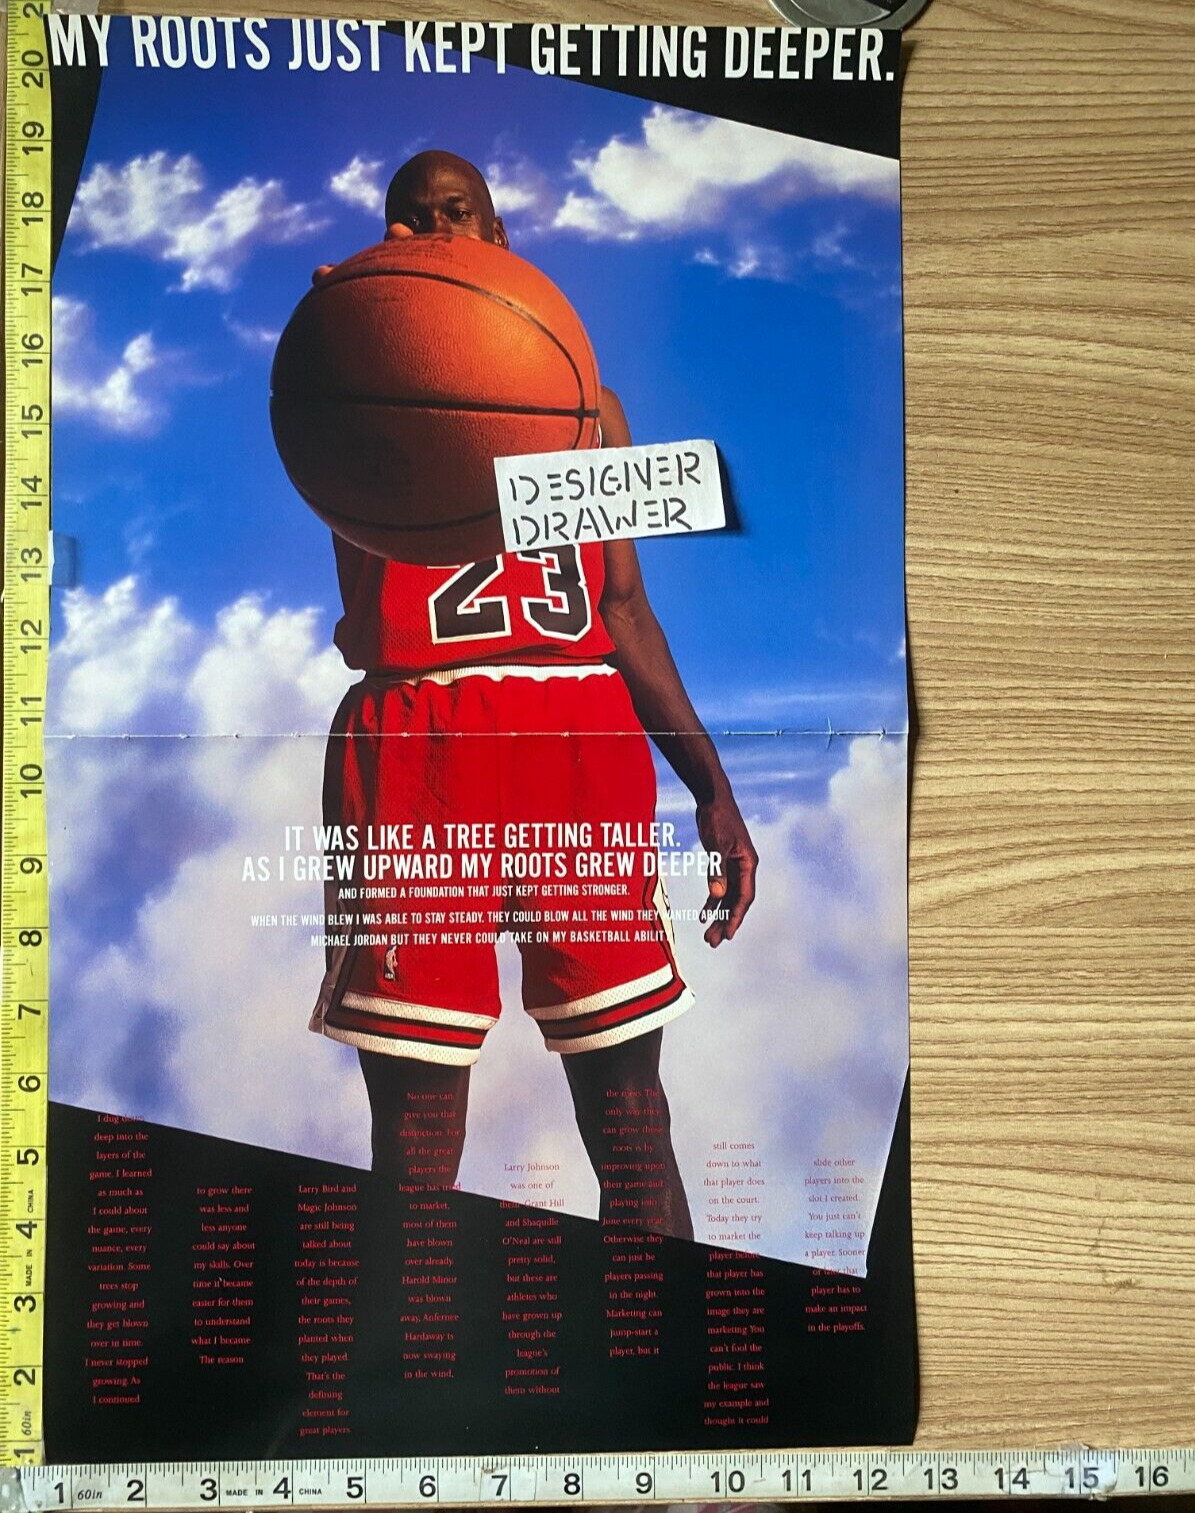 Michael Jordan Basketball Photo Book Photograph: Roots Get Deeper